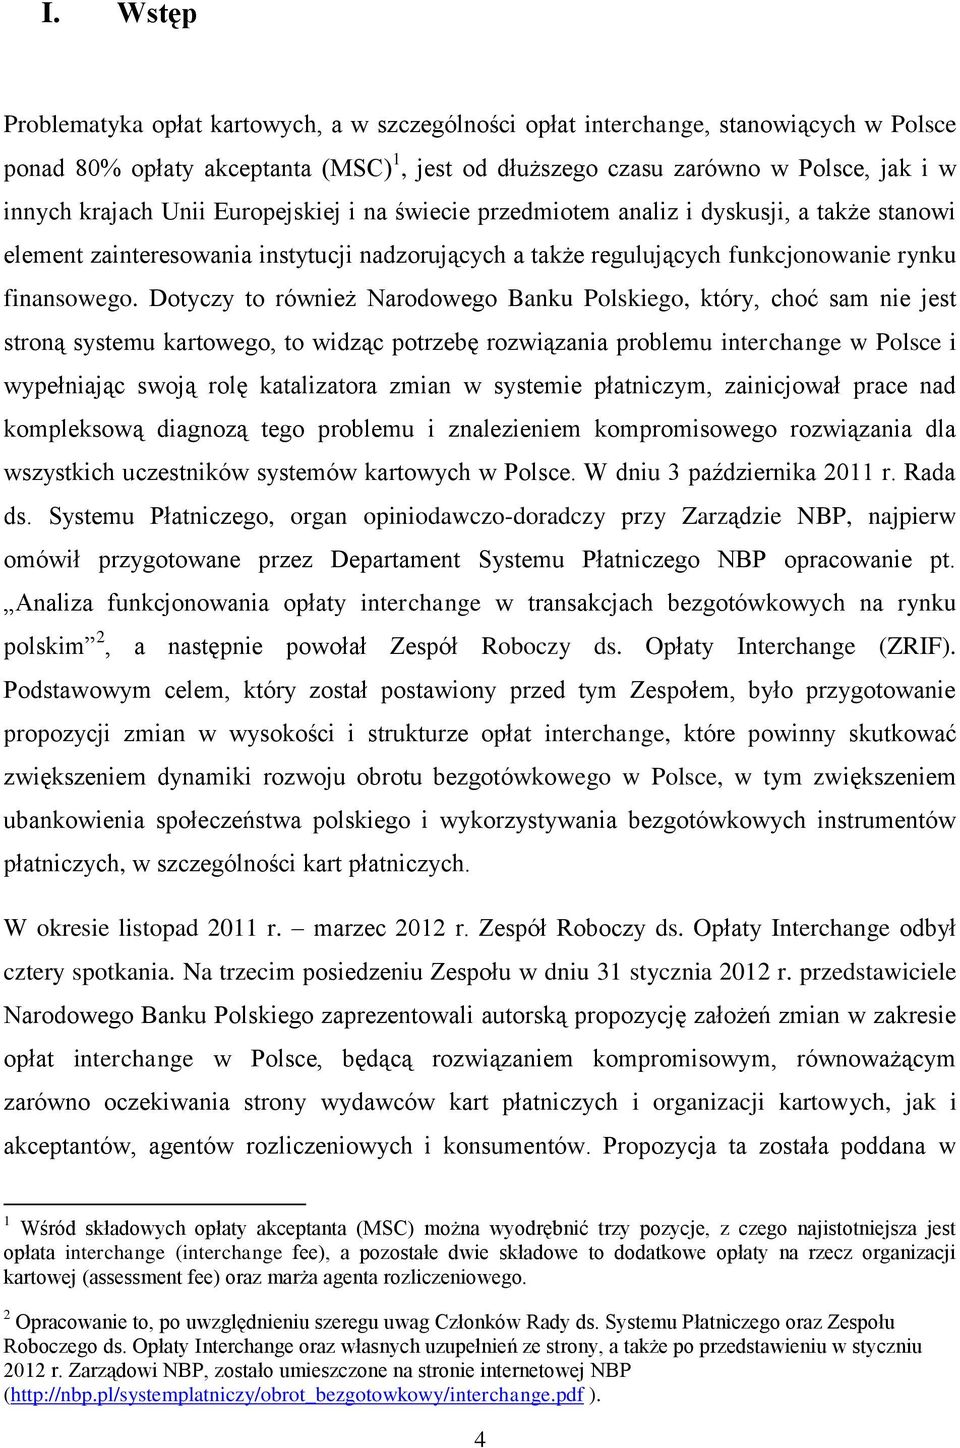 Dotyczy to również Narodowego Banku Polskiego, który, choć sam nie jest stroną systemu kartowego, to widząc potrzebę rozwiązania problemu interchange w Polsce i wypełniając swoją rolę katalizatora